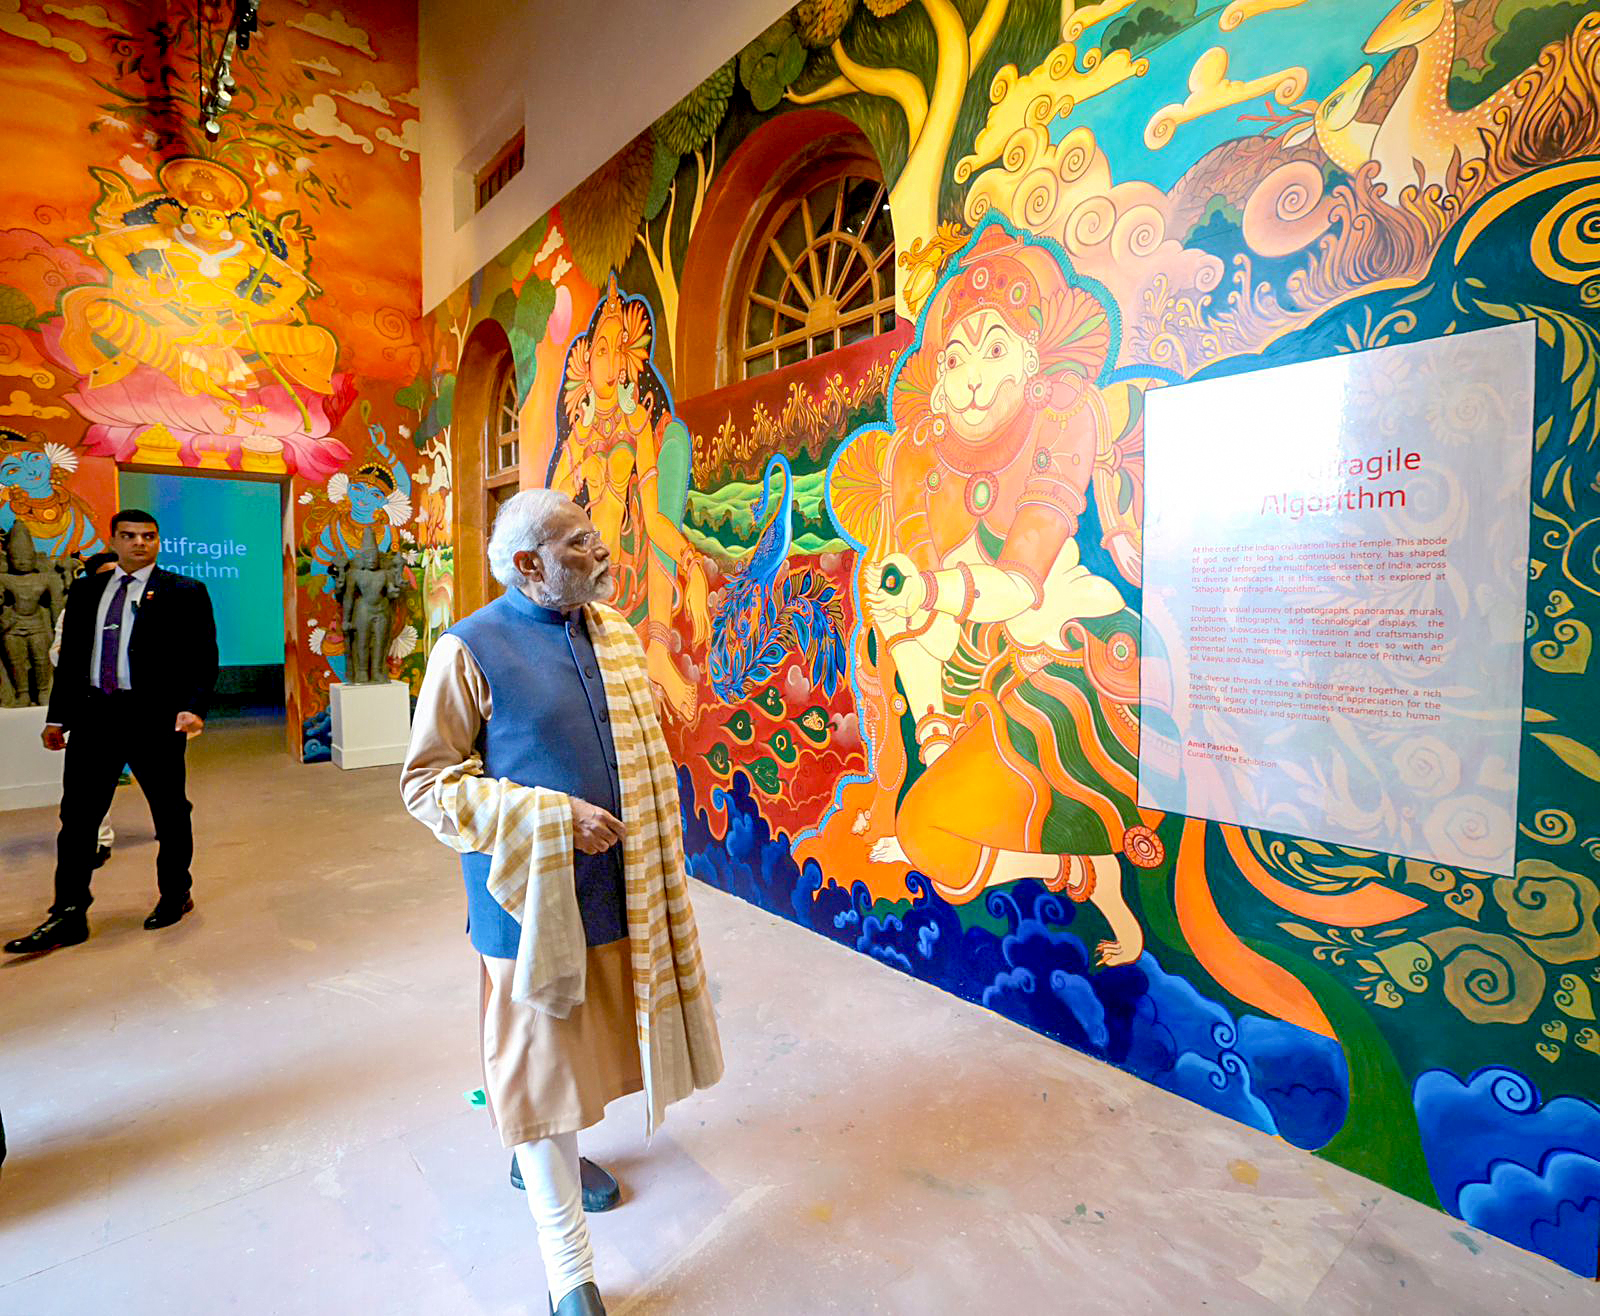 Narendra Modi visited the India Art, Architecture & Design Biennale